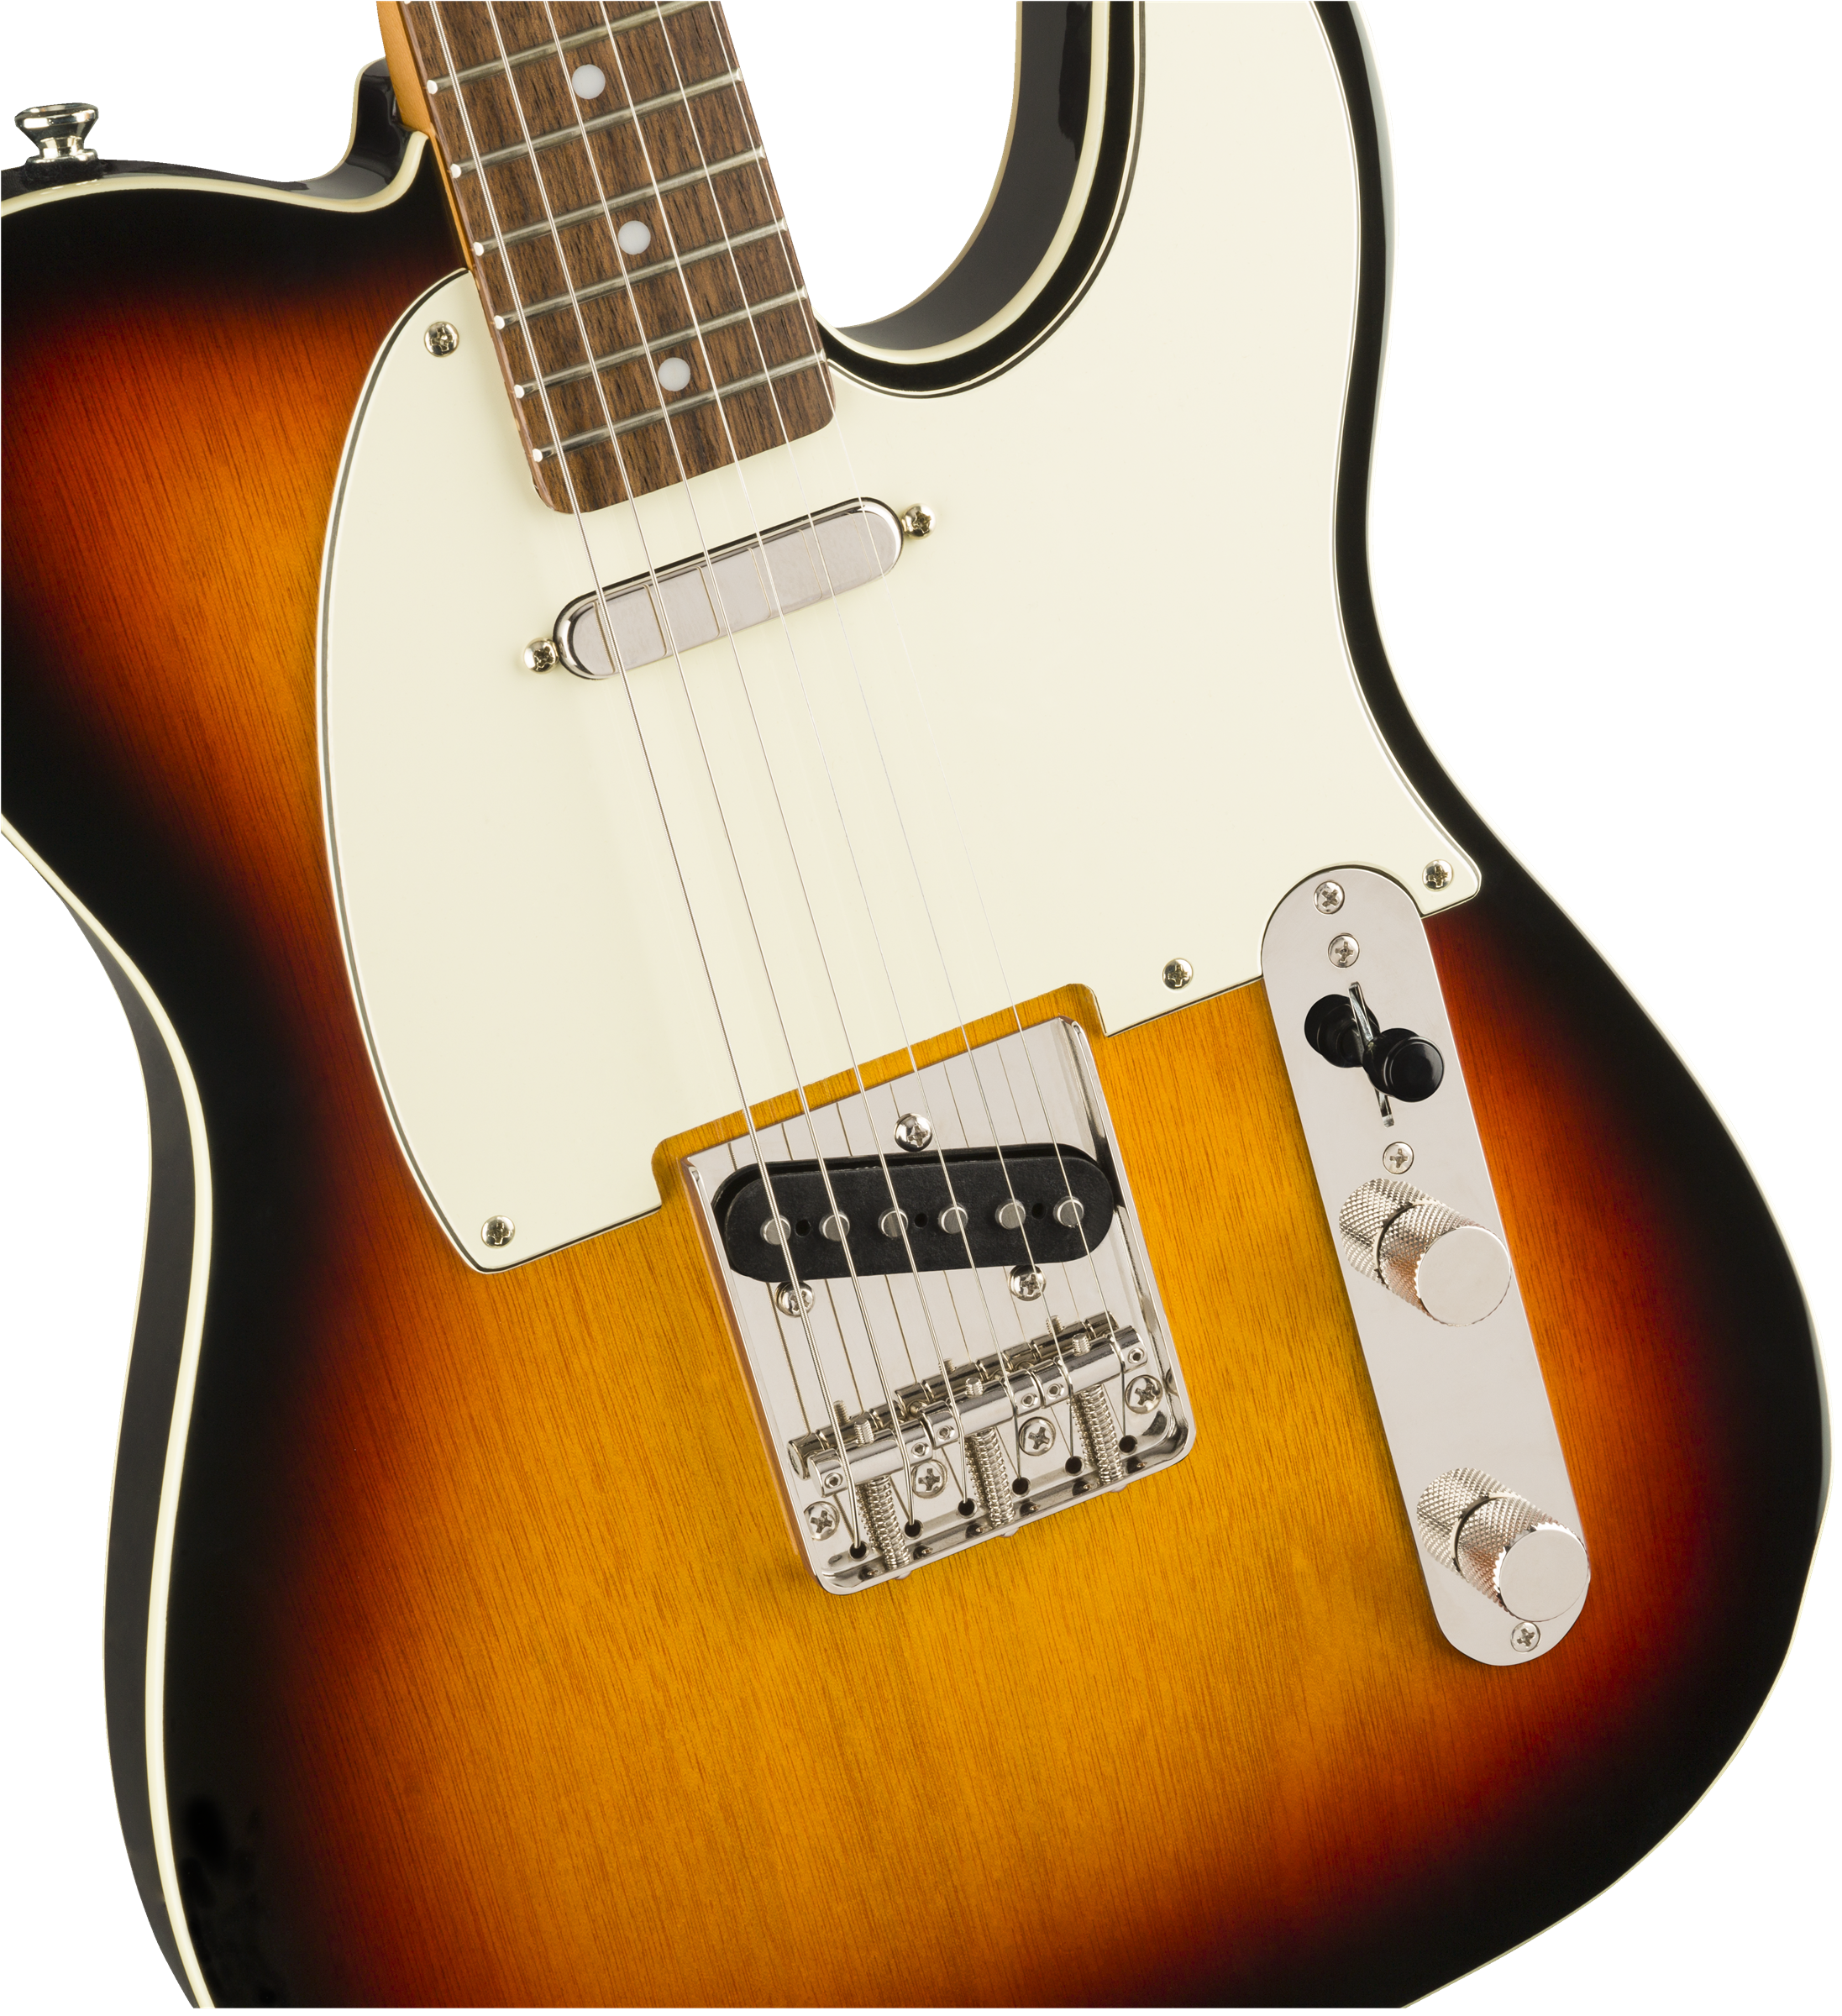 Squier Classic Vibe '60s Custom Telecaster Electric Guitar in Three Tone Sunburst